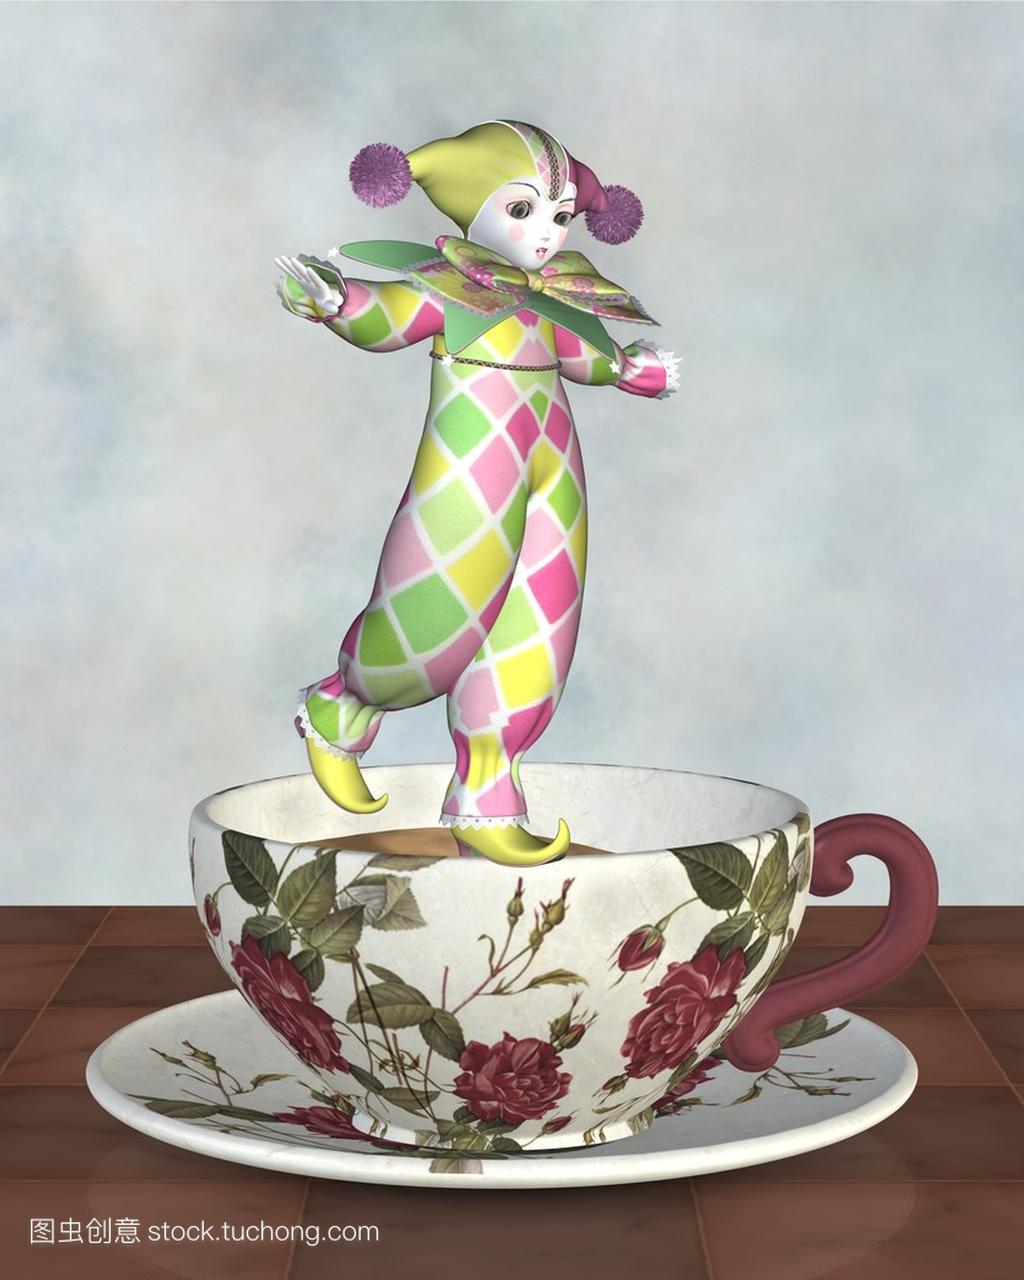 平衡在茶杯上的皮埃罗的小丑娃娃